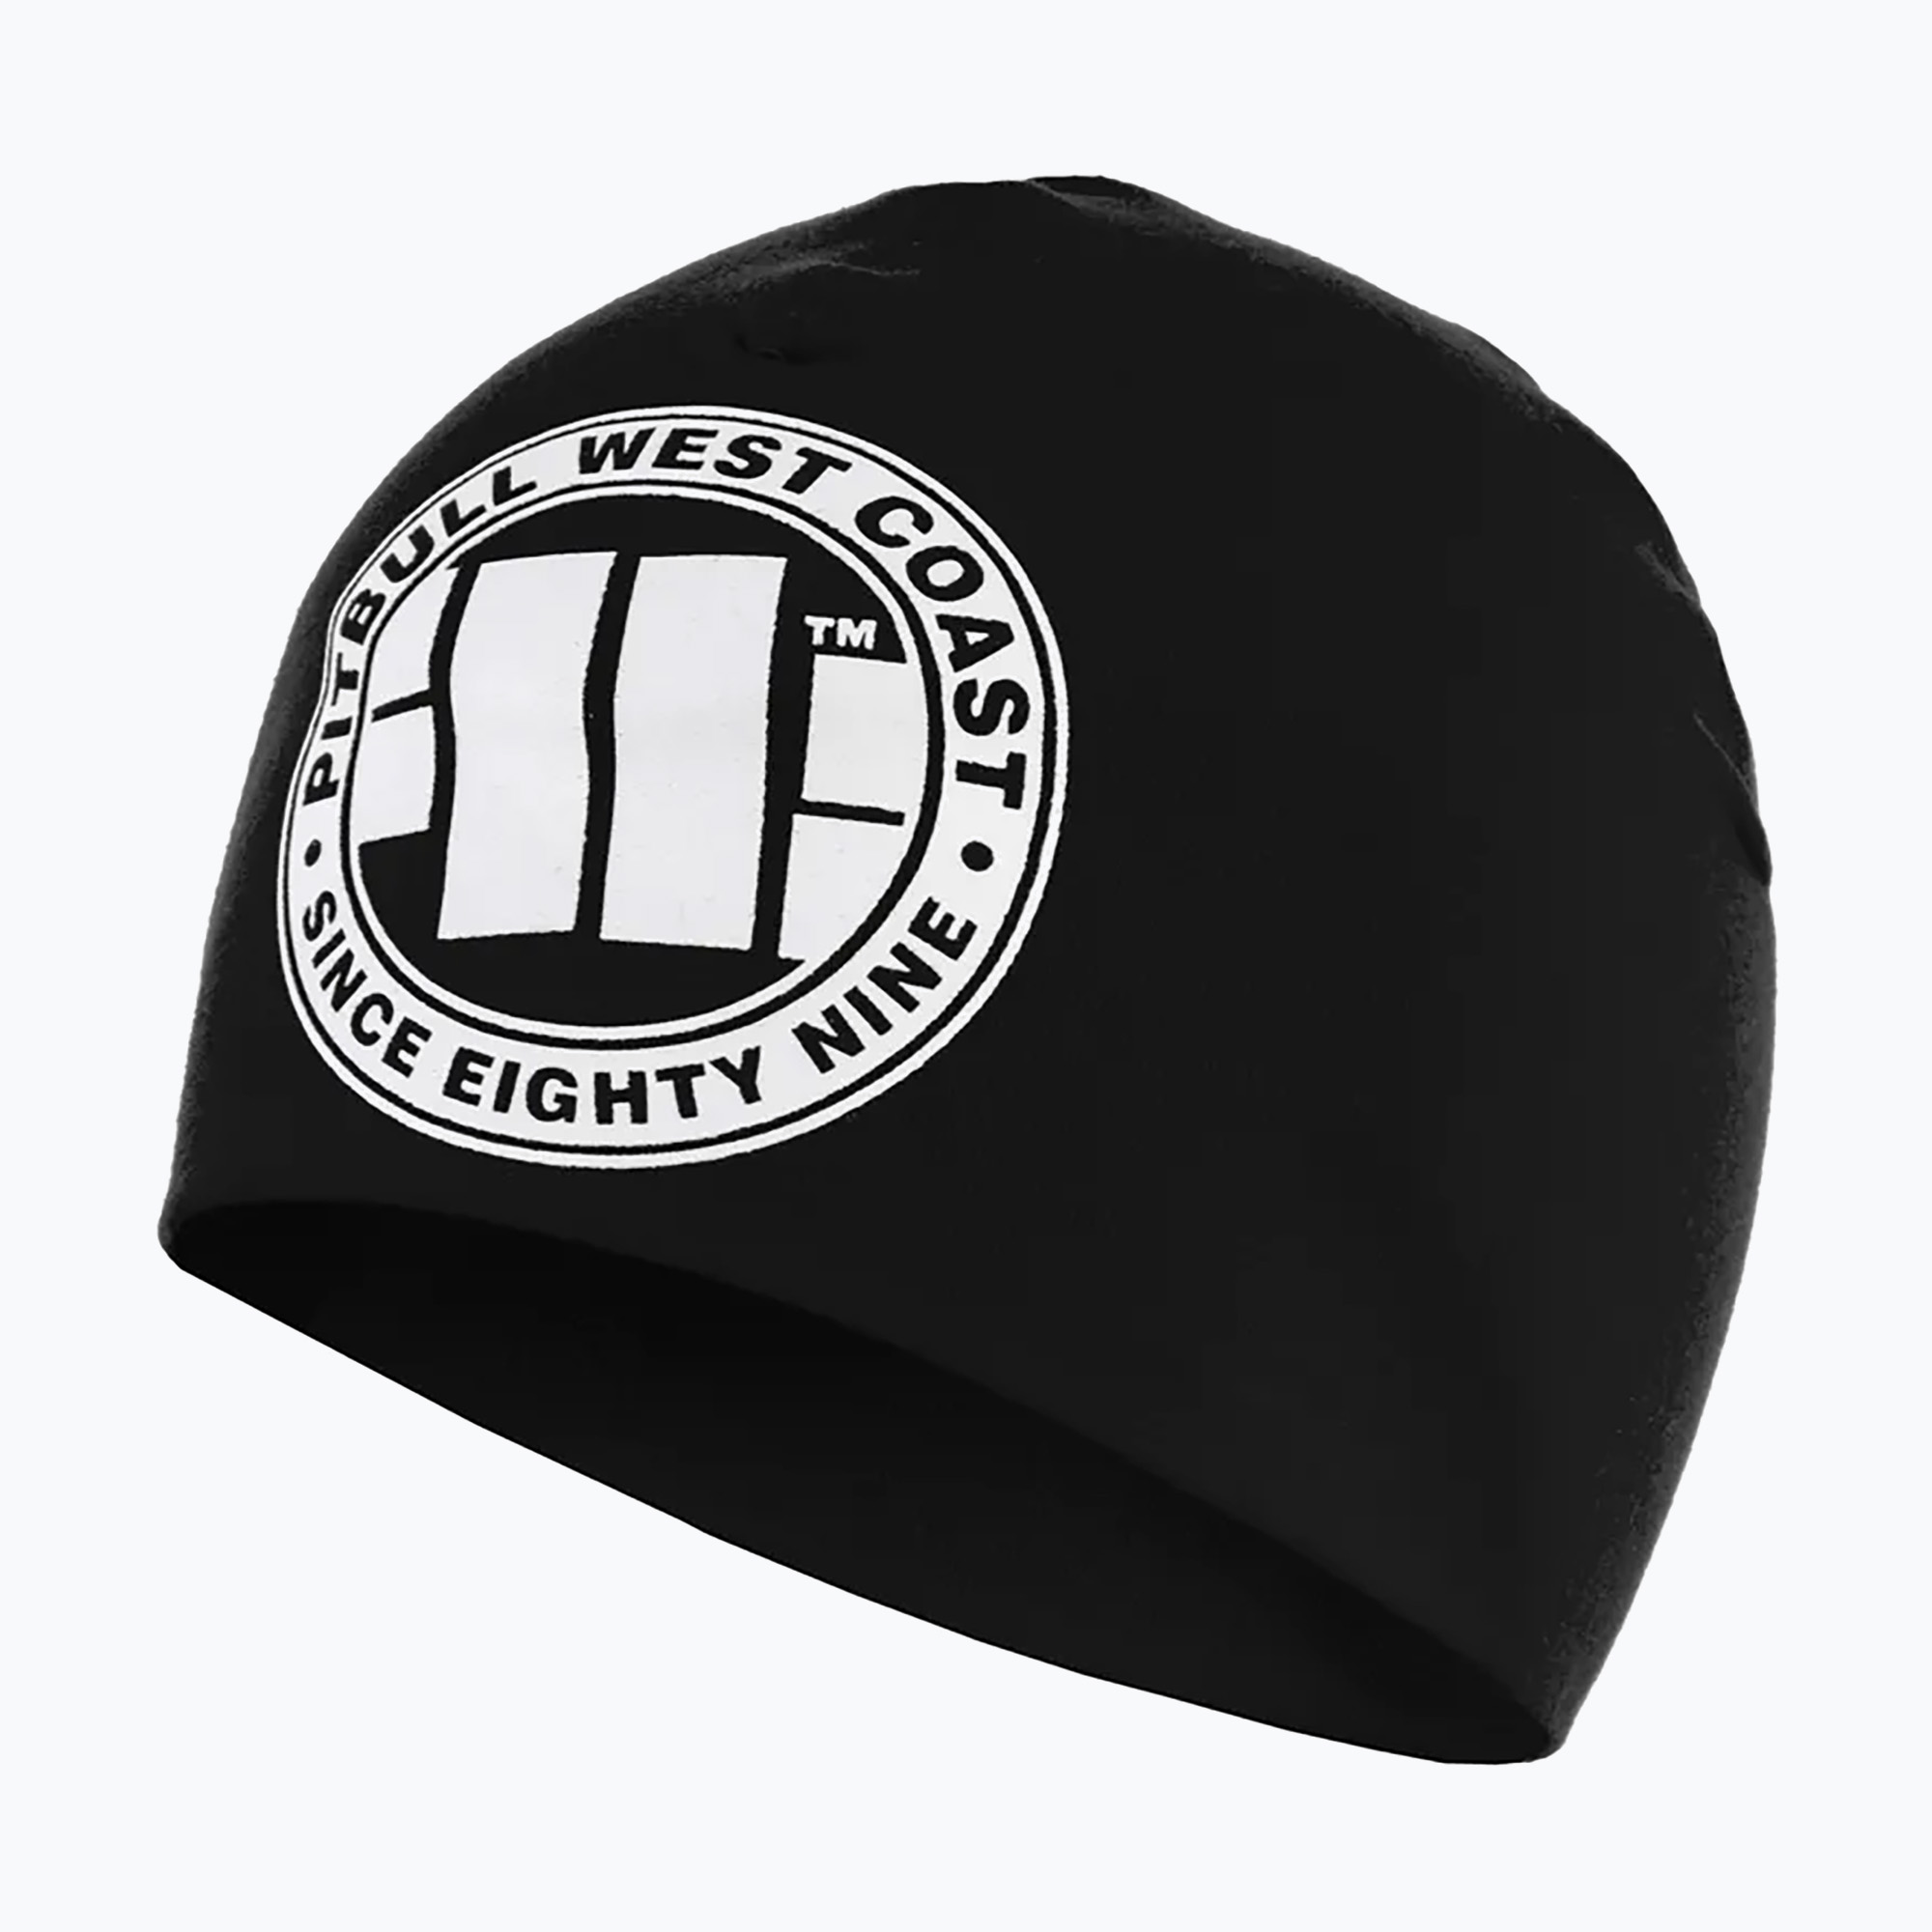 Pitbull West Coast zimná čiapka s veľkým logom čierna/biela